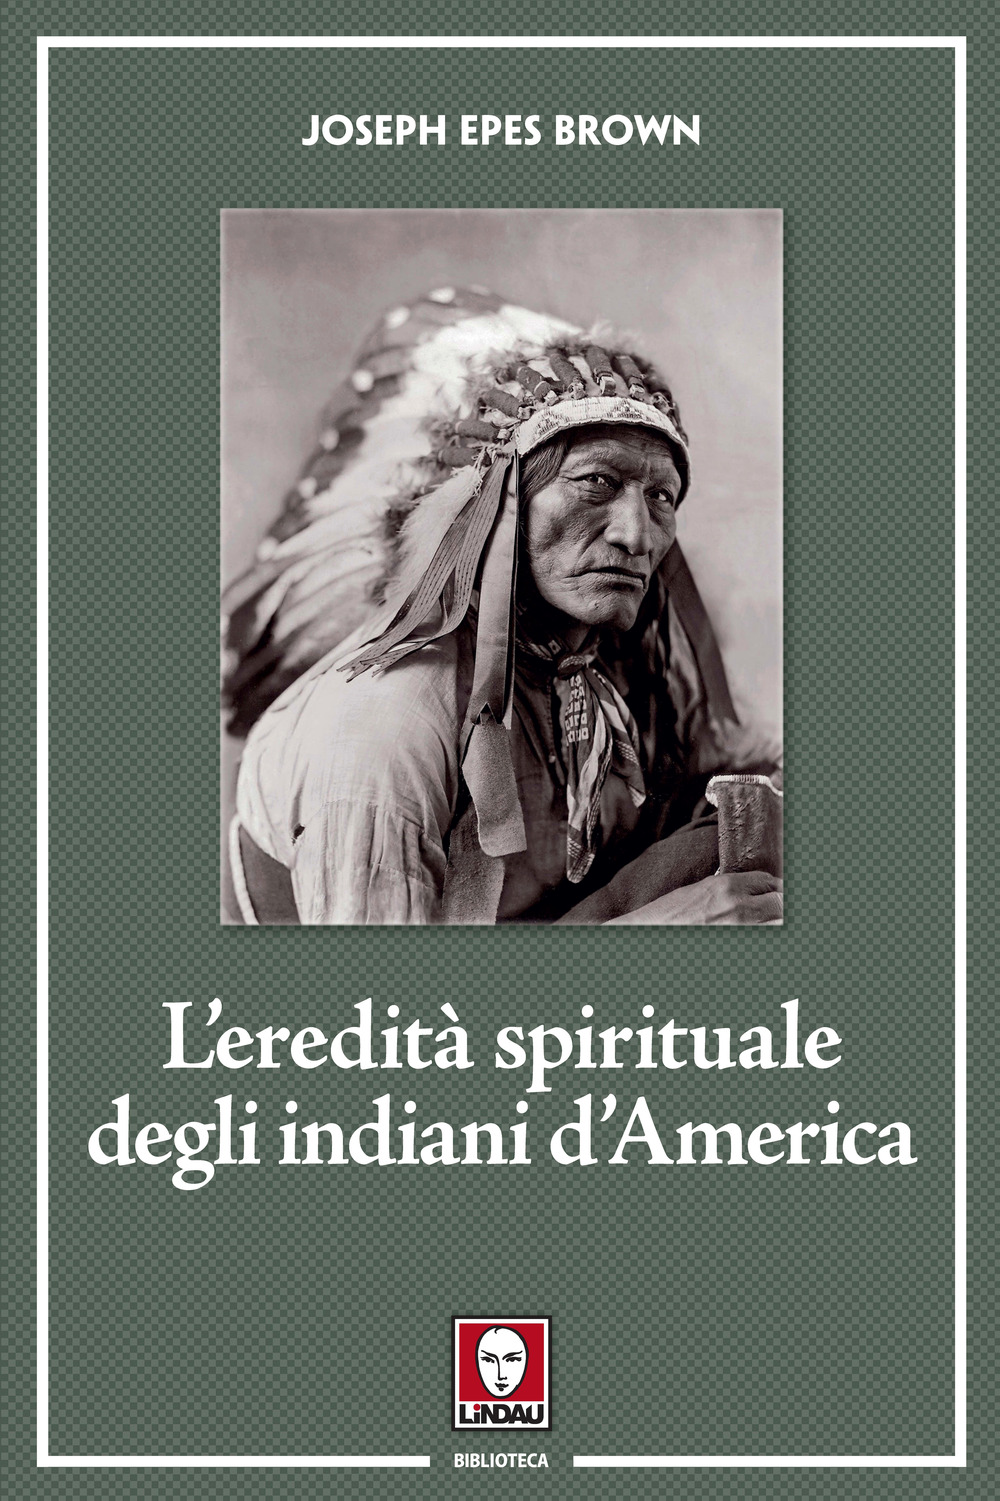 EREDITÀ SPIRITUALE DEGLI INDIANI D'AMERICA (L') - Epes Brown Joseph - 9788833535371